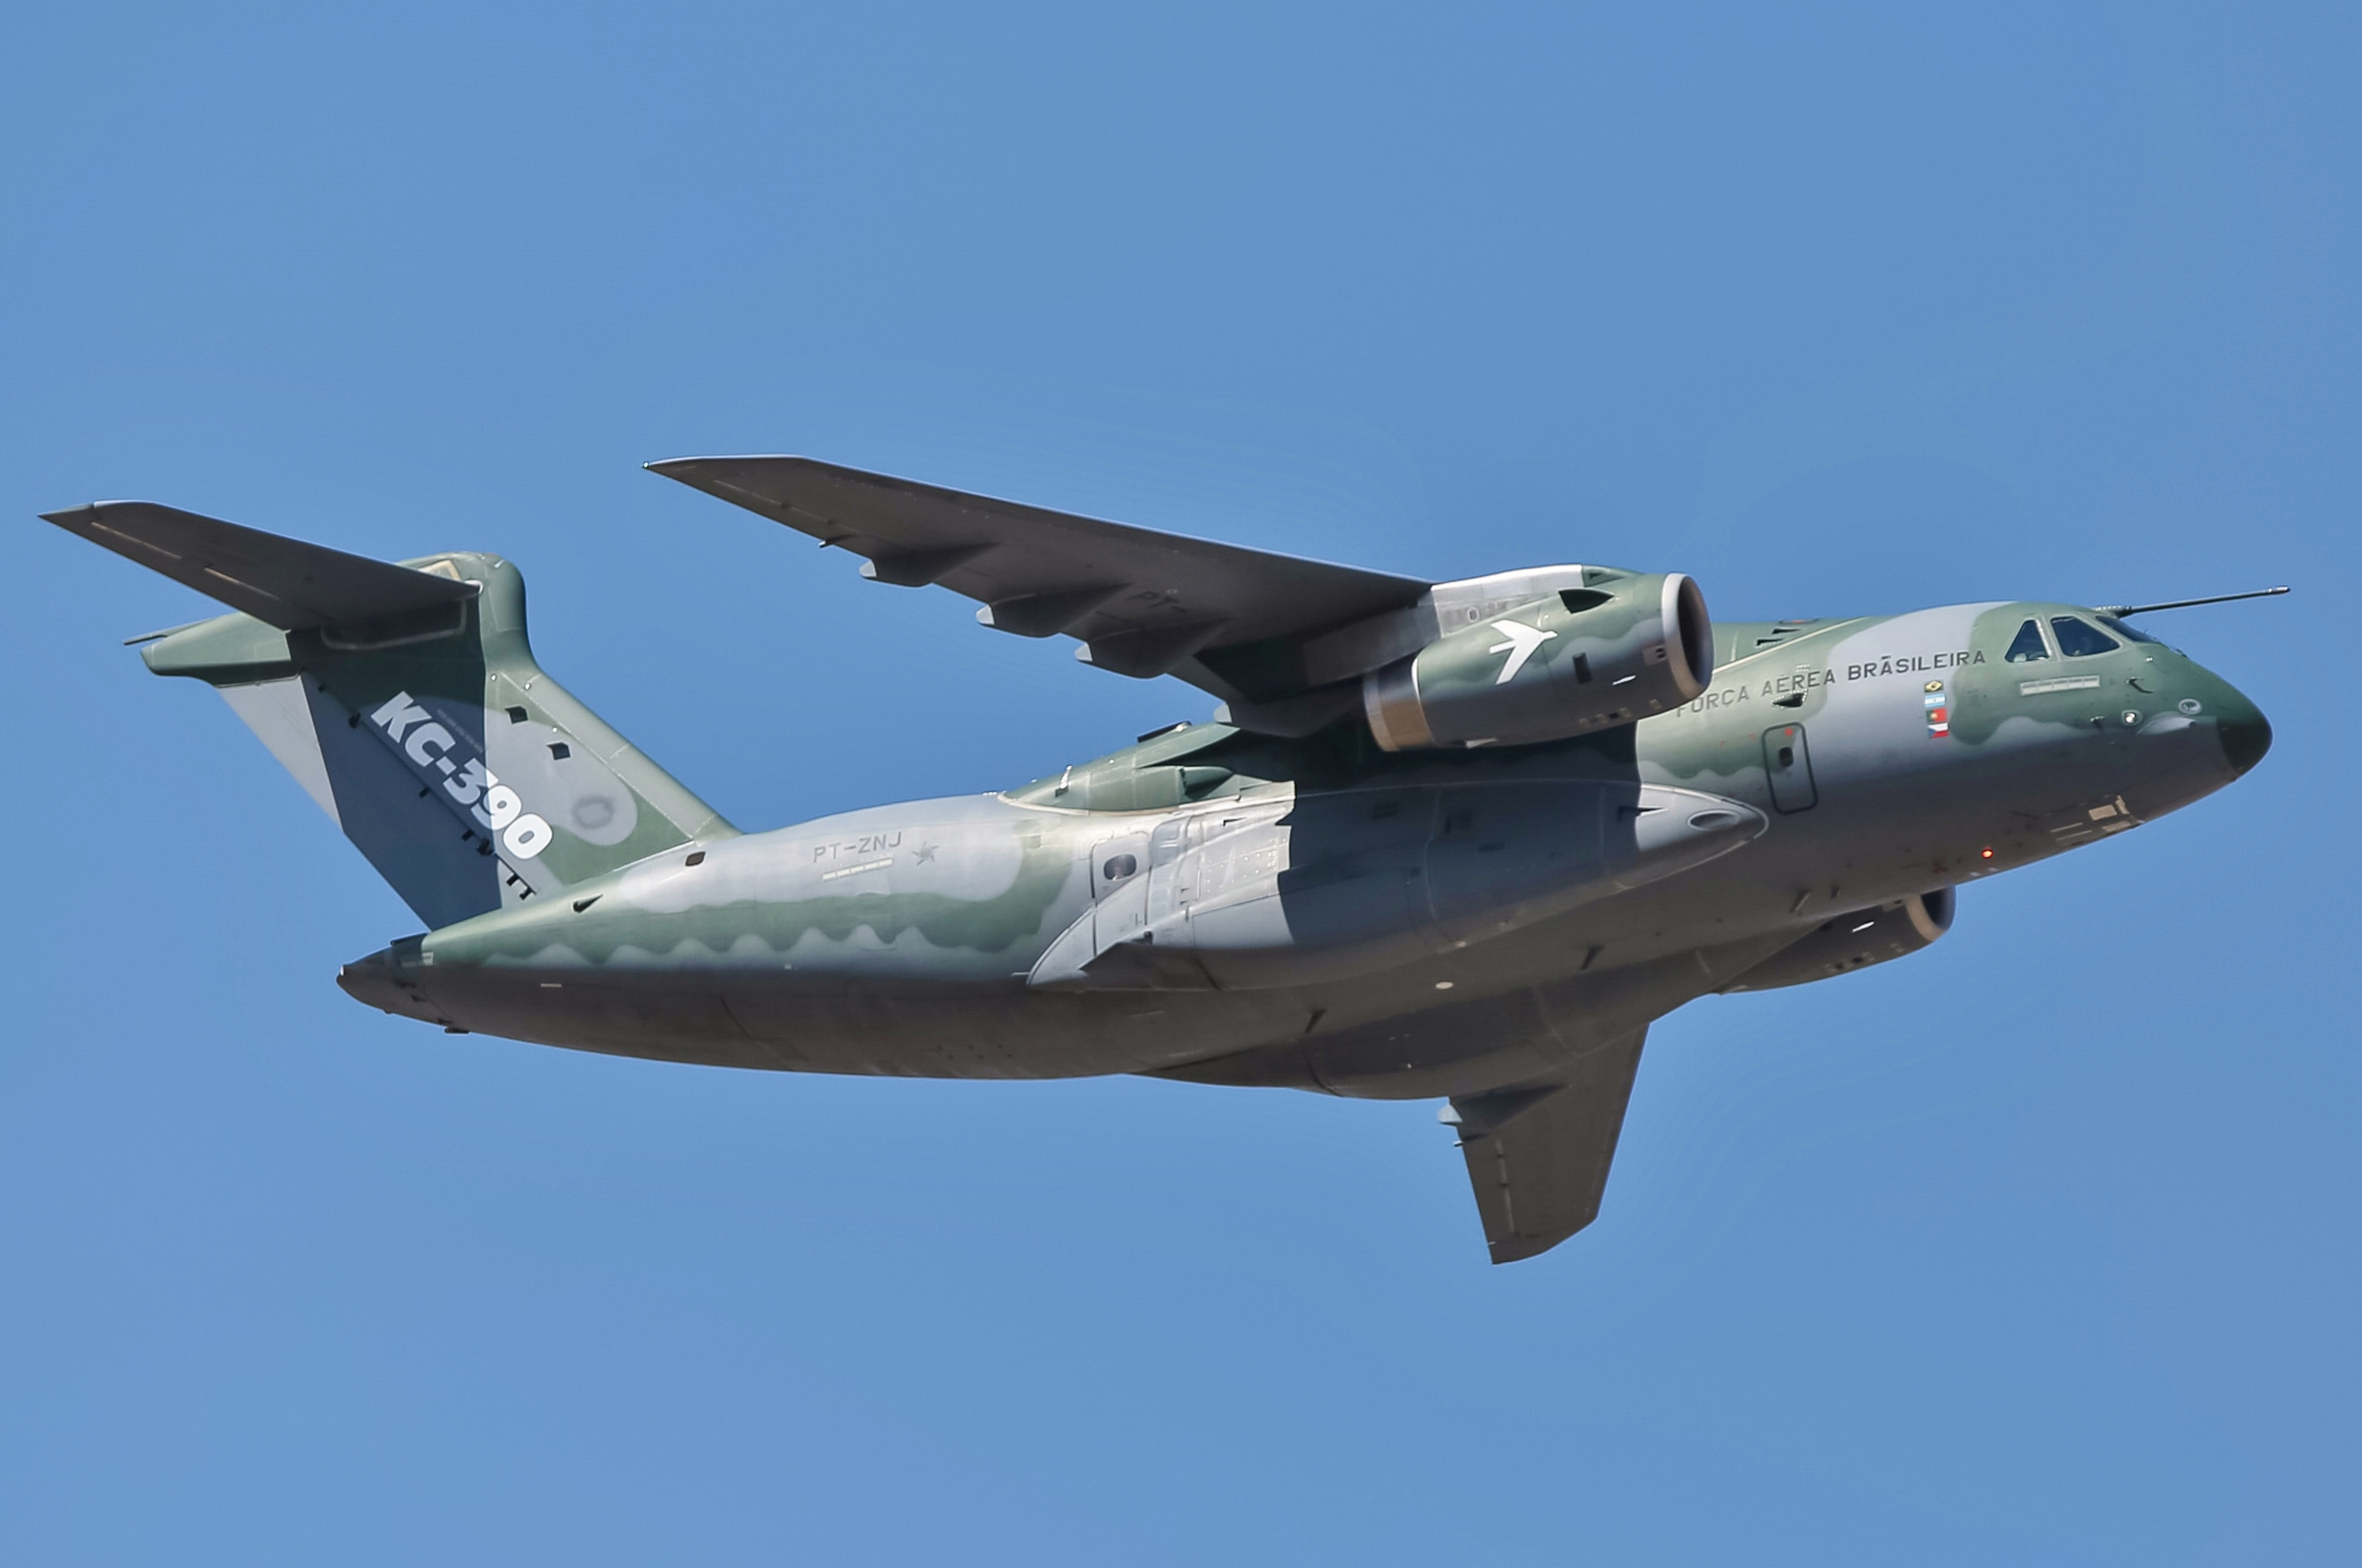 Embraer_KC-390%2C_PT-ZNJ_-_Desfile_C%C3%ADvico_2018_%28cropped%29.jpg